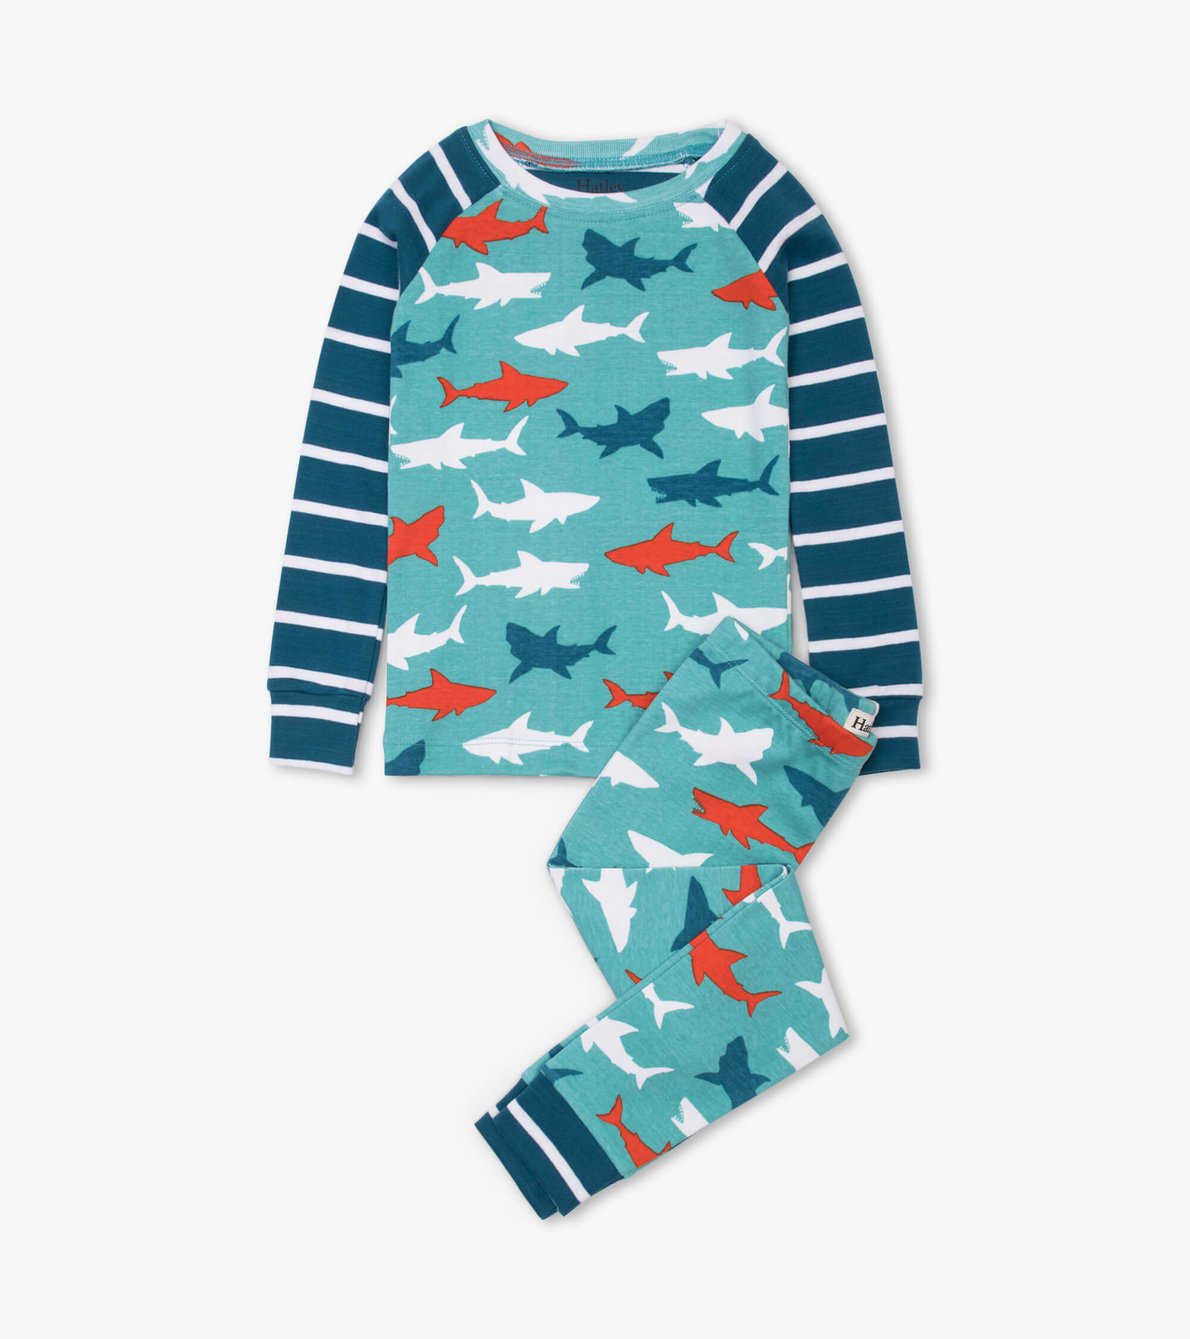 View larger image of Great White Sharks Organic Cotton Raglan Pajama Set